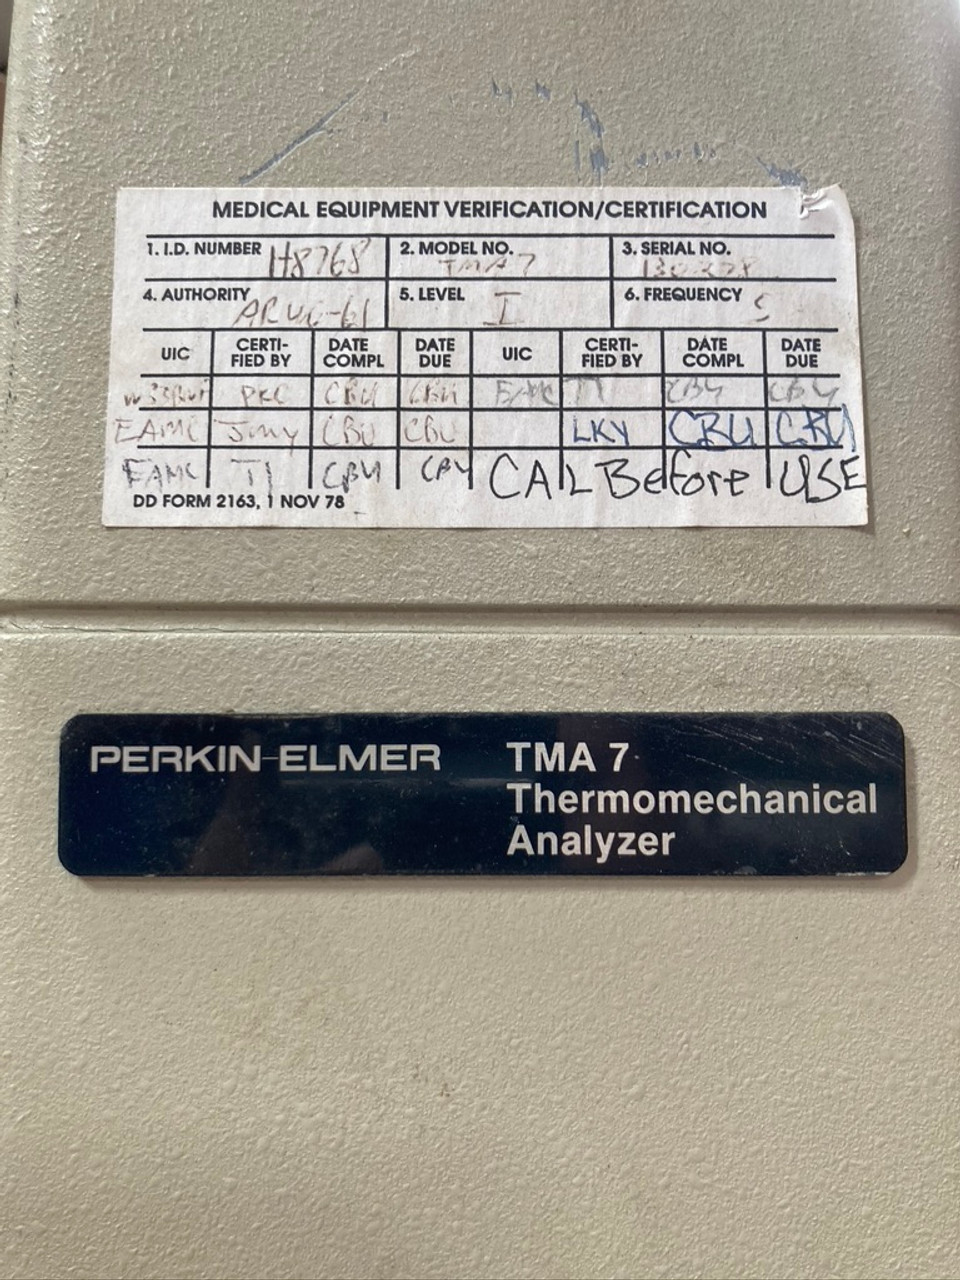 Perkin-Elmer TMA 7 Thermomechanical Analyzer